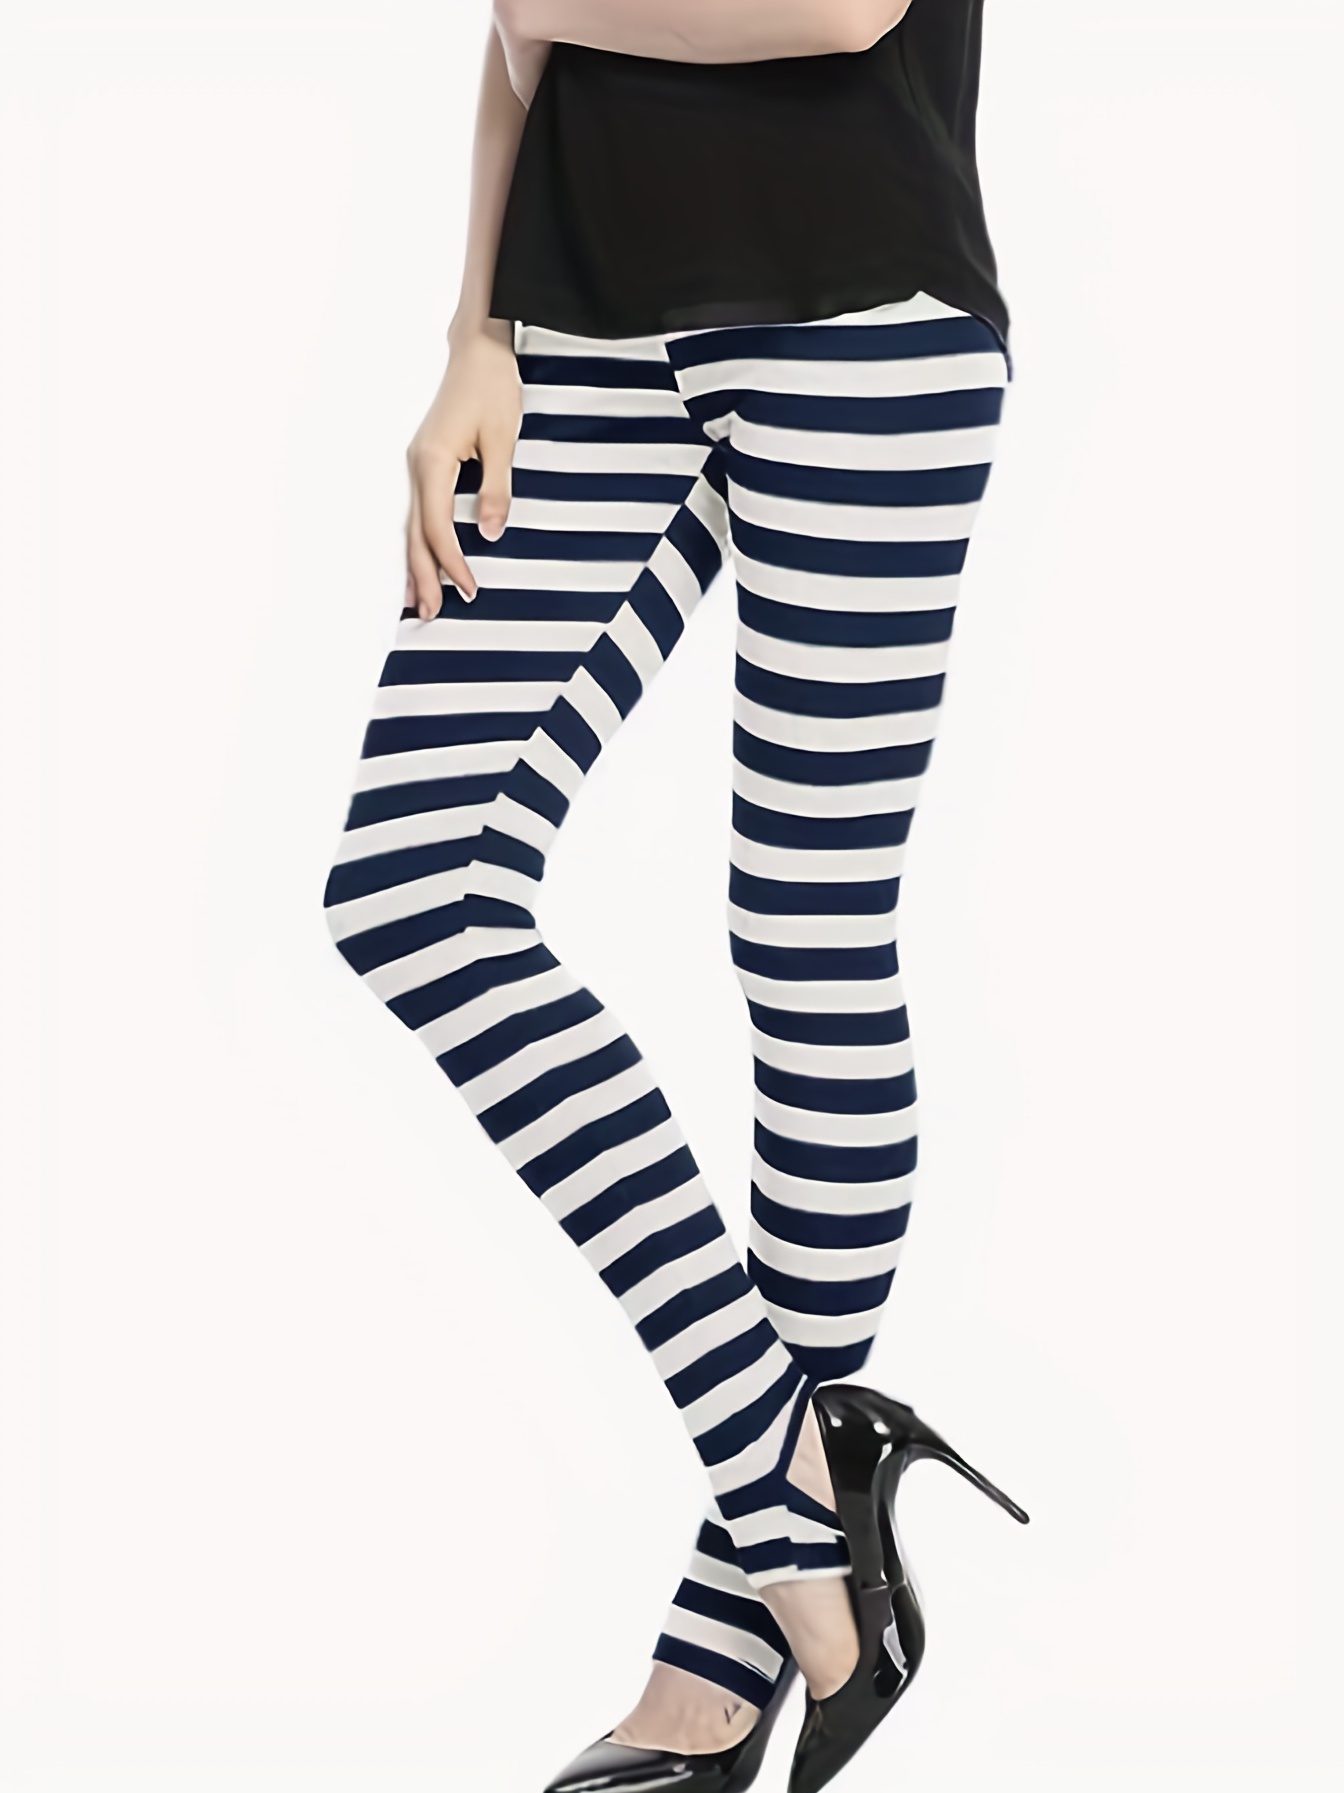 Black and White Striped Leggings for Women